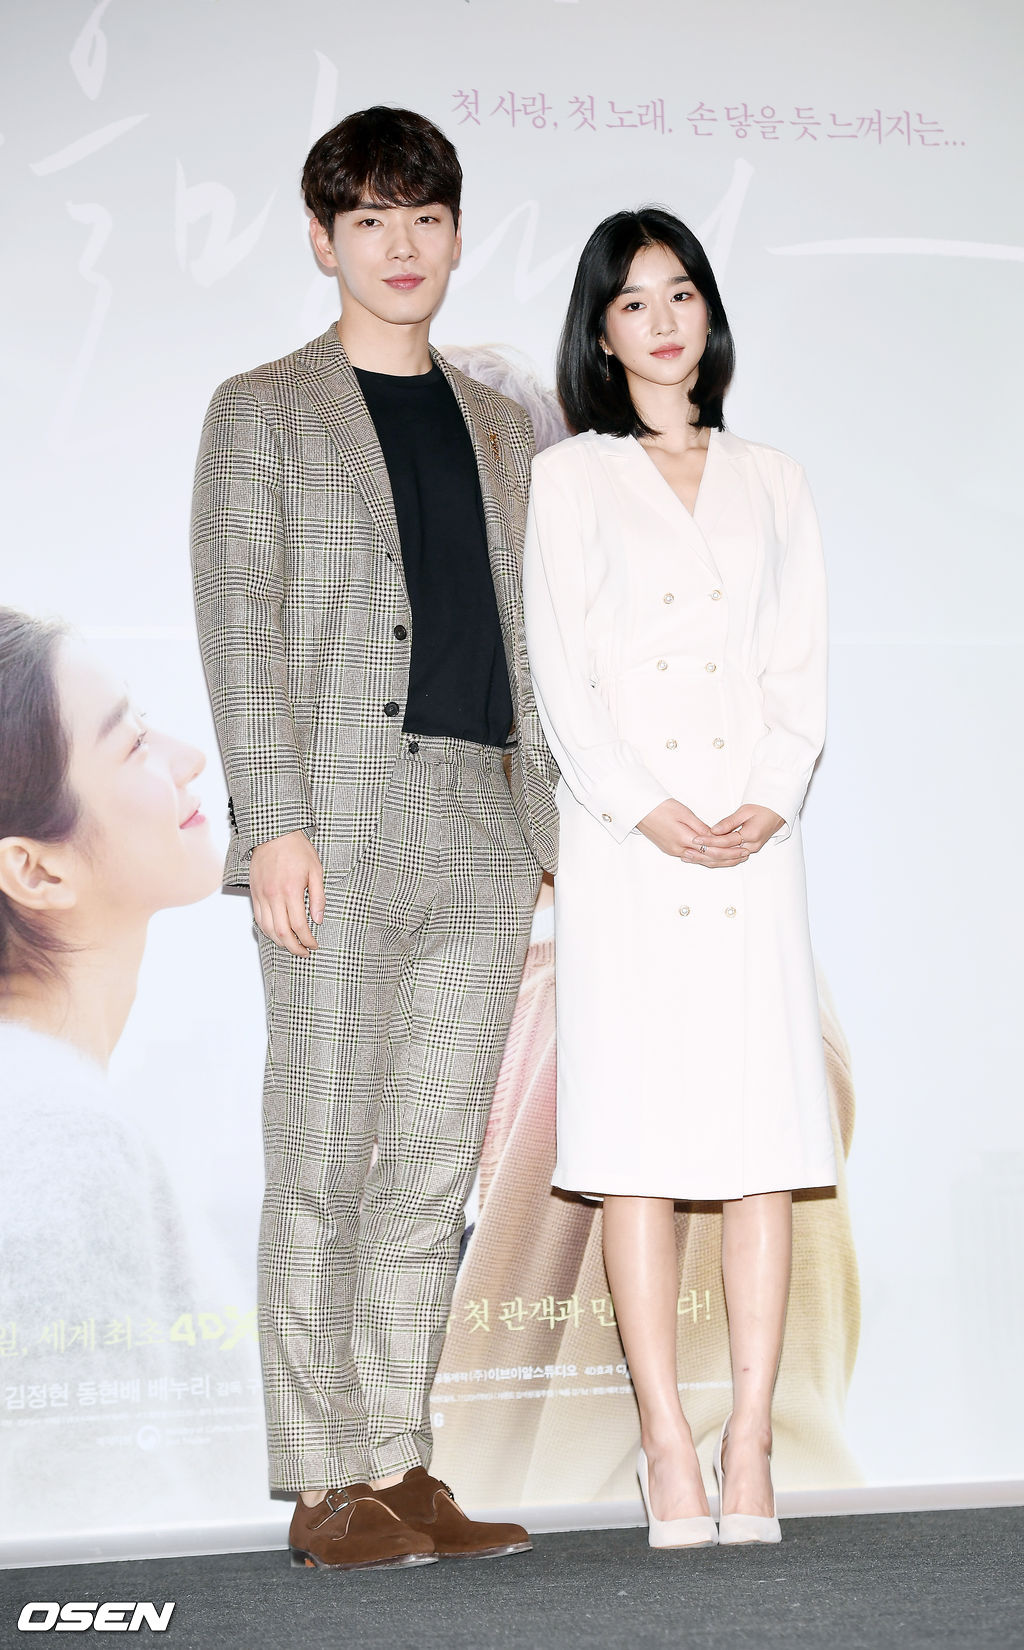 2018년 3월 22일 오후 서울 CGV용산아이파크몰에서 진행된 영화 '기억을 만나다' 언론시사회 및 기자간담회에서 배우 김정현과 서예지가 포토타임을 갖고 있다./ rumi@osen.co.kr